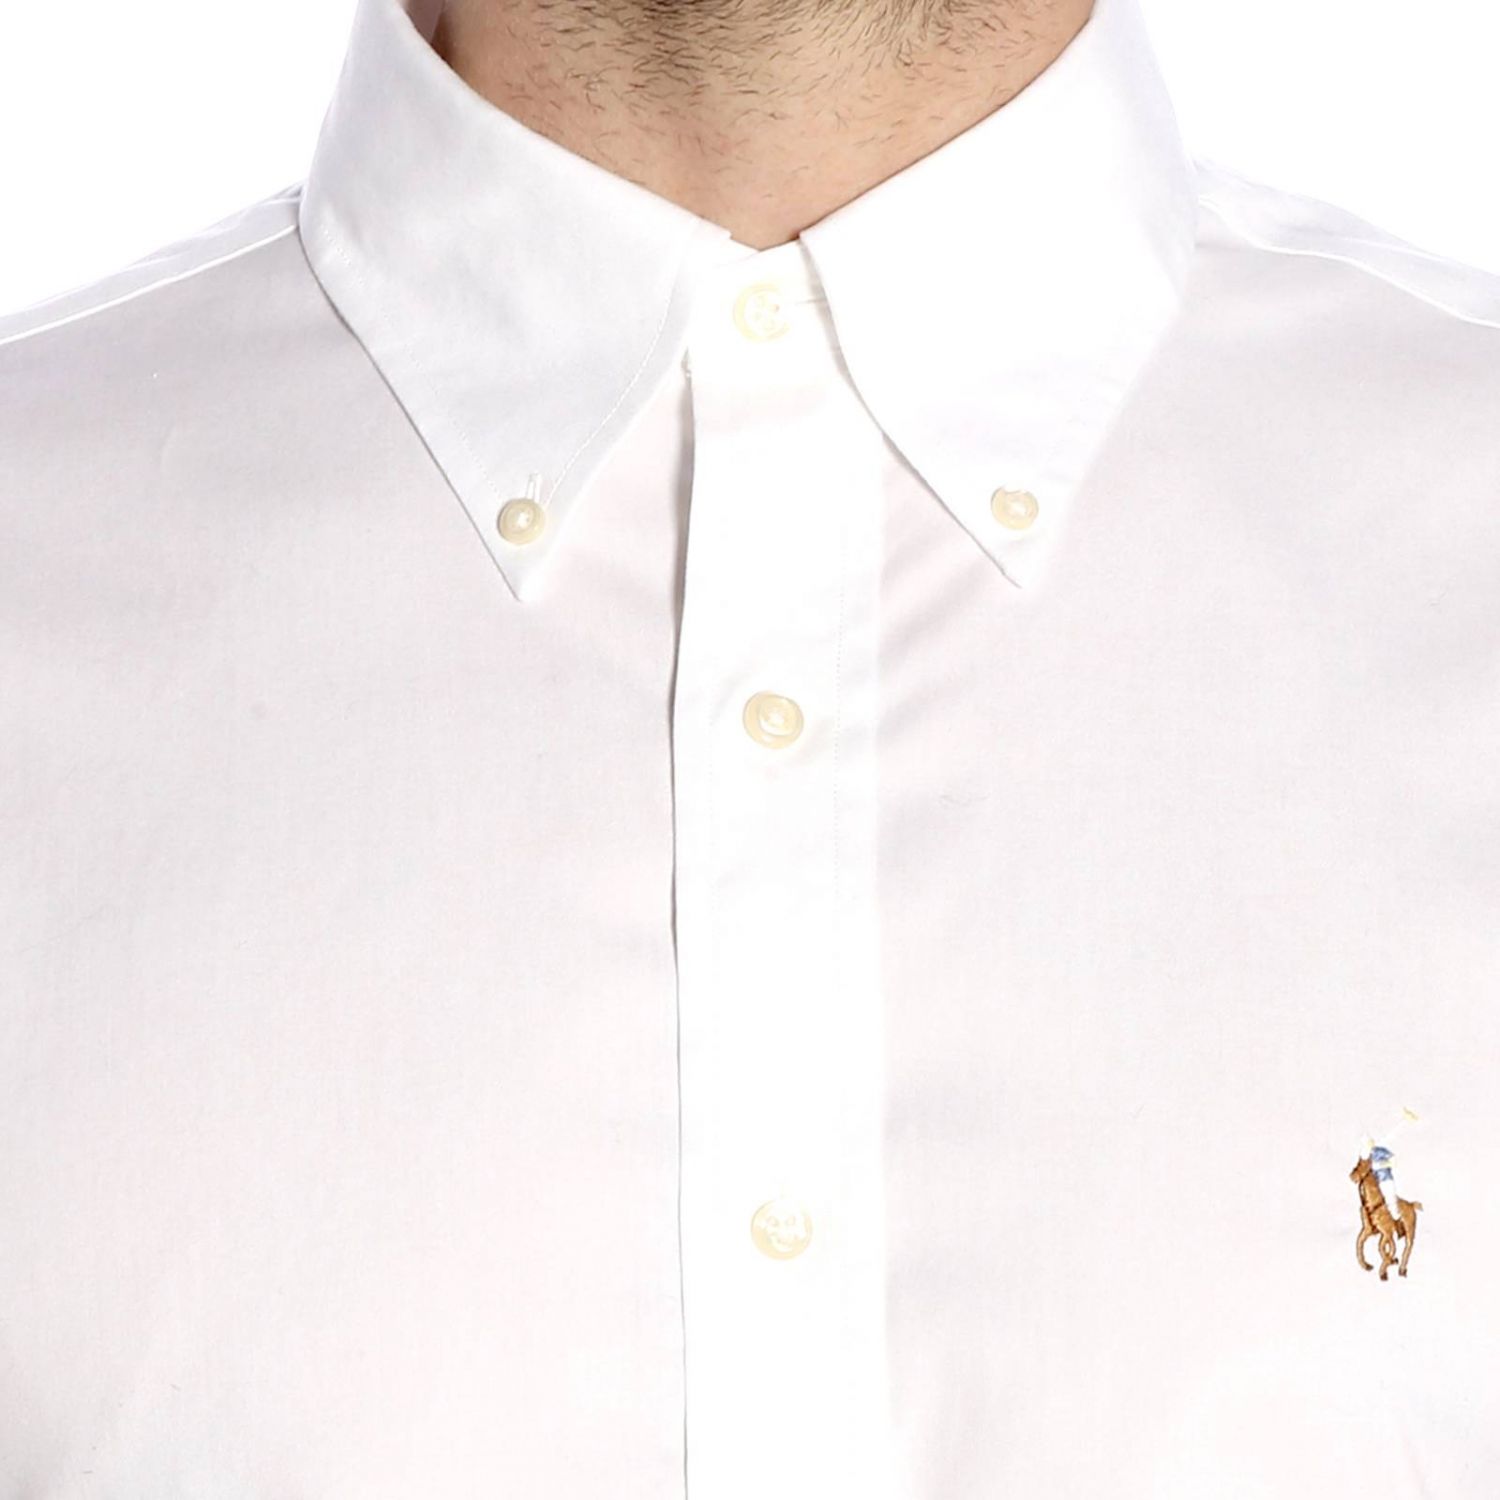 Polo Ralph Lauren Outlet: Shirt men | Shirt Polo Ralph Lauren Men White ...